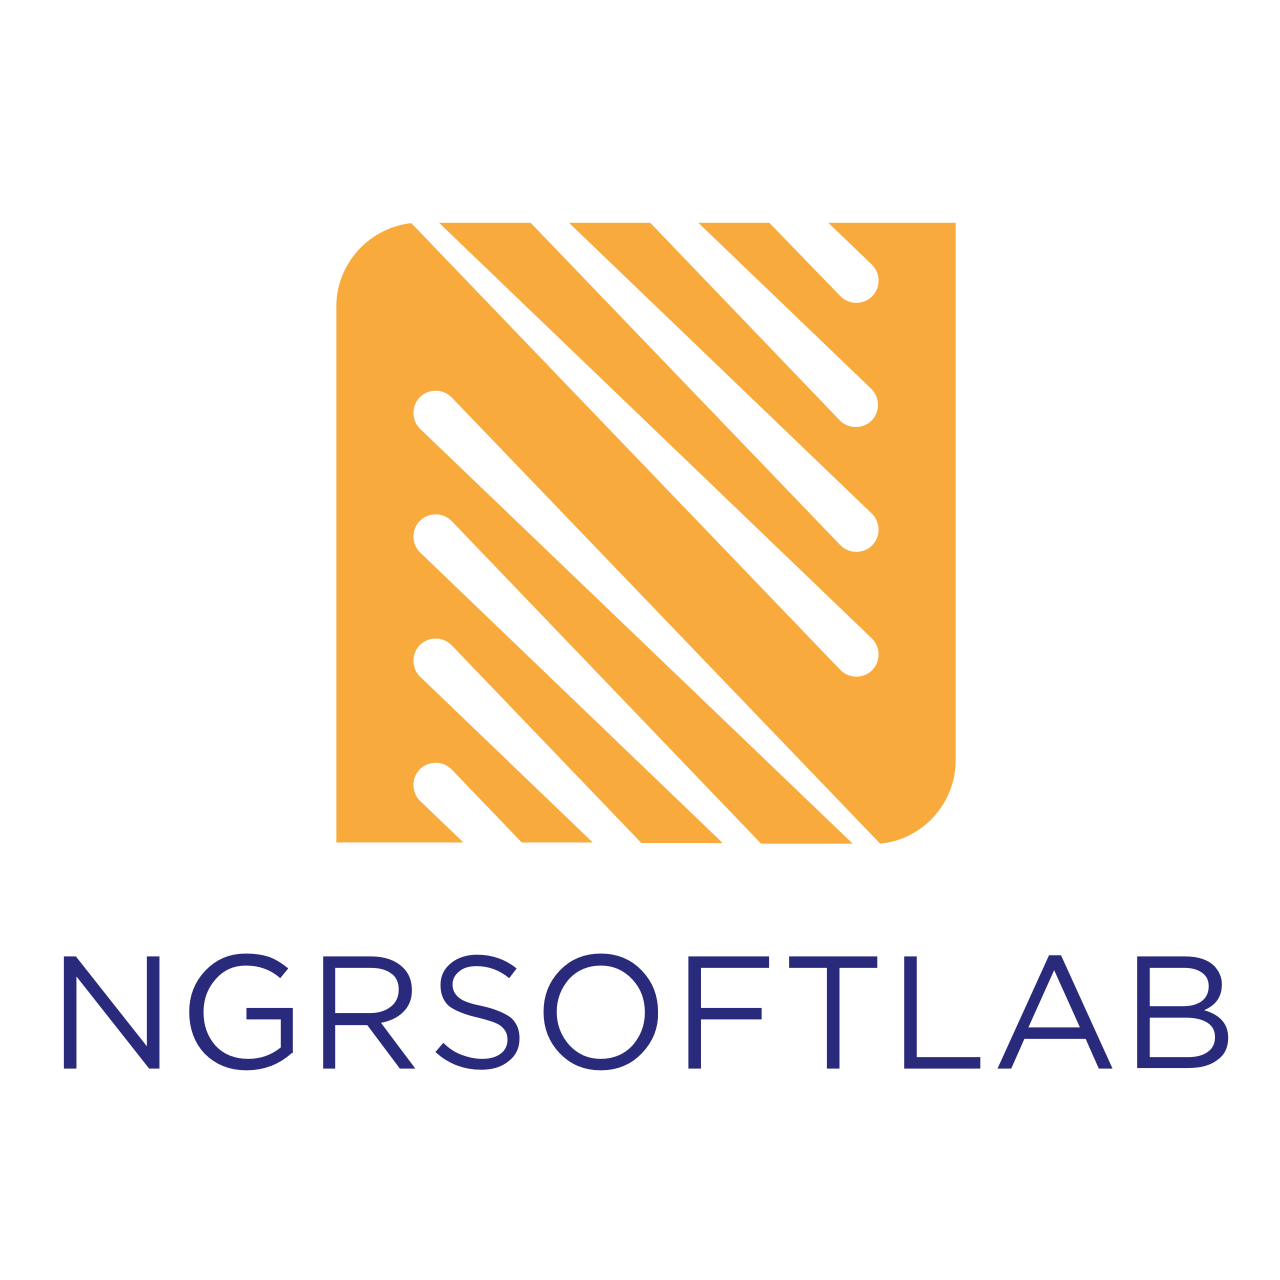 NGR Softlab